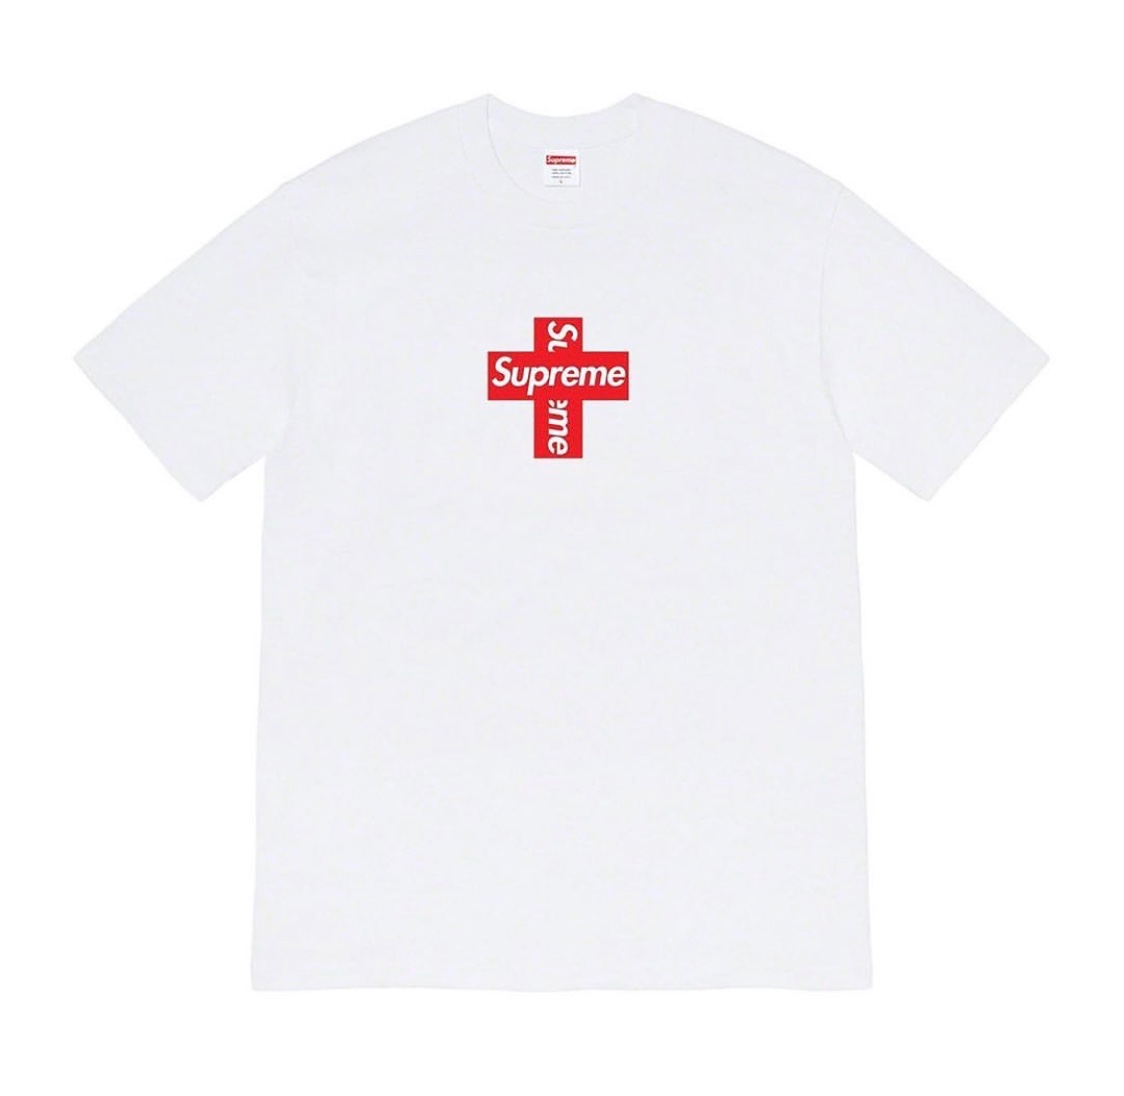 Supreme Cross Box Logo: Anche T-shirts oltre a Hoodies in arrivo per la Fall/Winter 2020